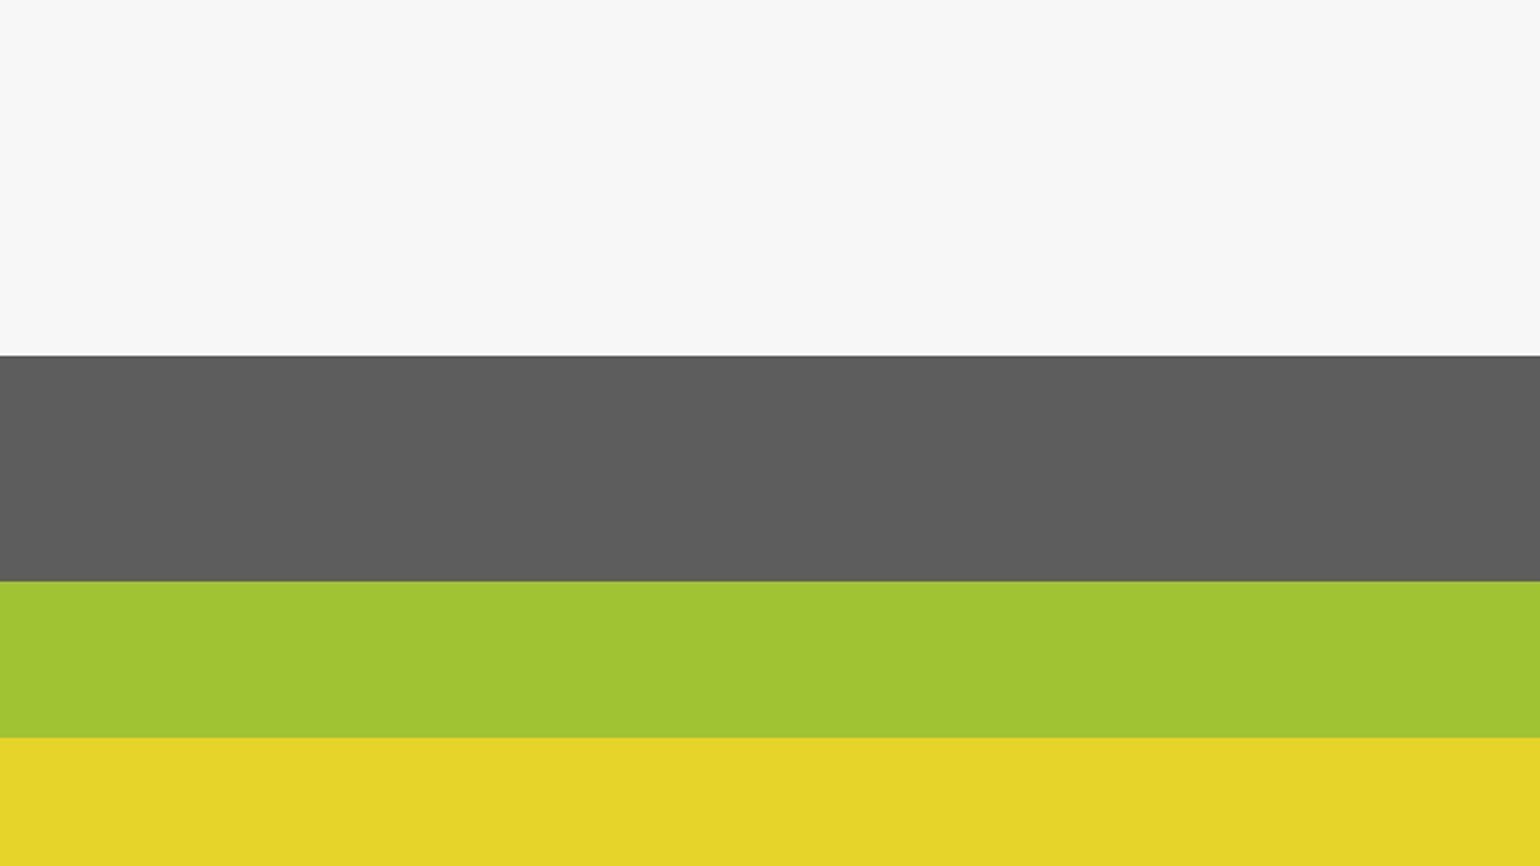 цветовая схема с жёлтым, зелёным, тёмно-серым и холодным белым 